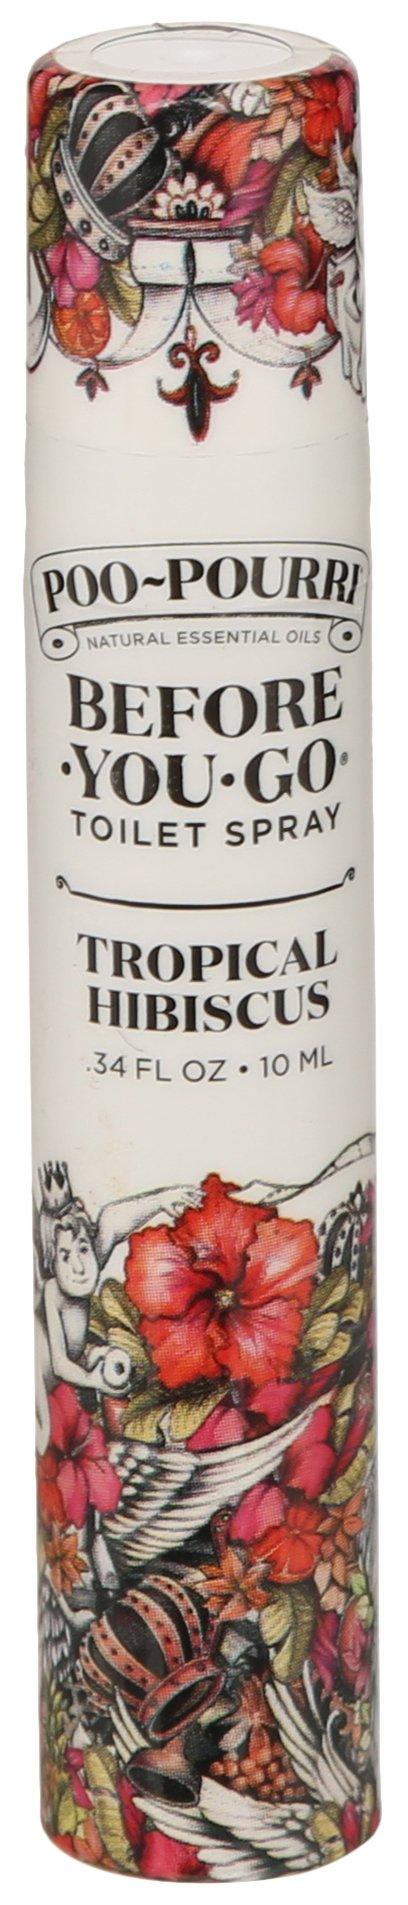 Poo Pourri Before-You-Go Toilet Spray, Tropical Hibiscus - 0.34 fl oz